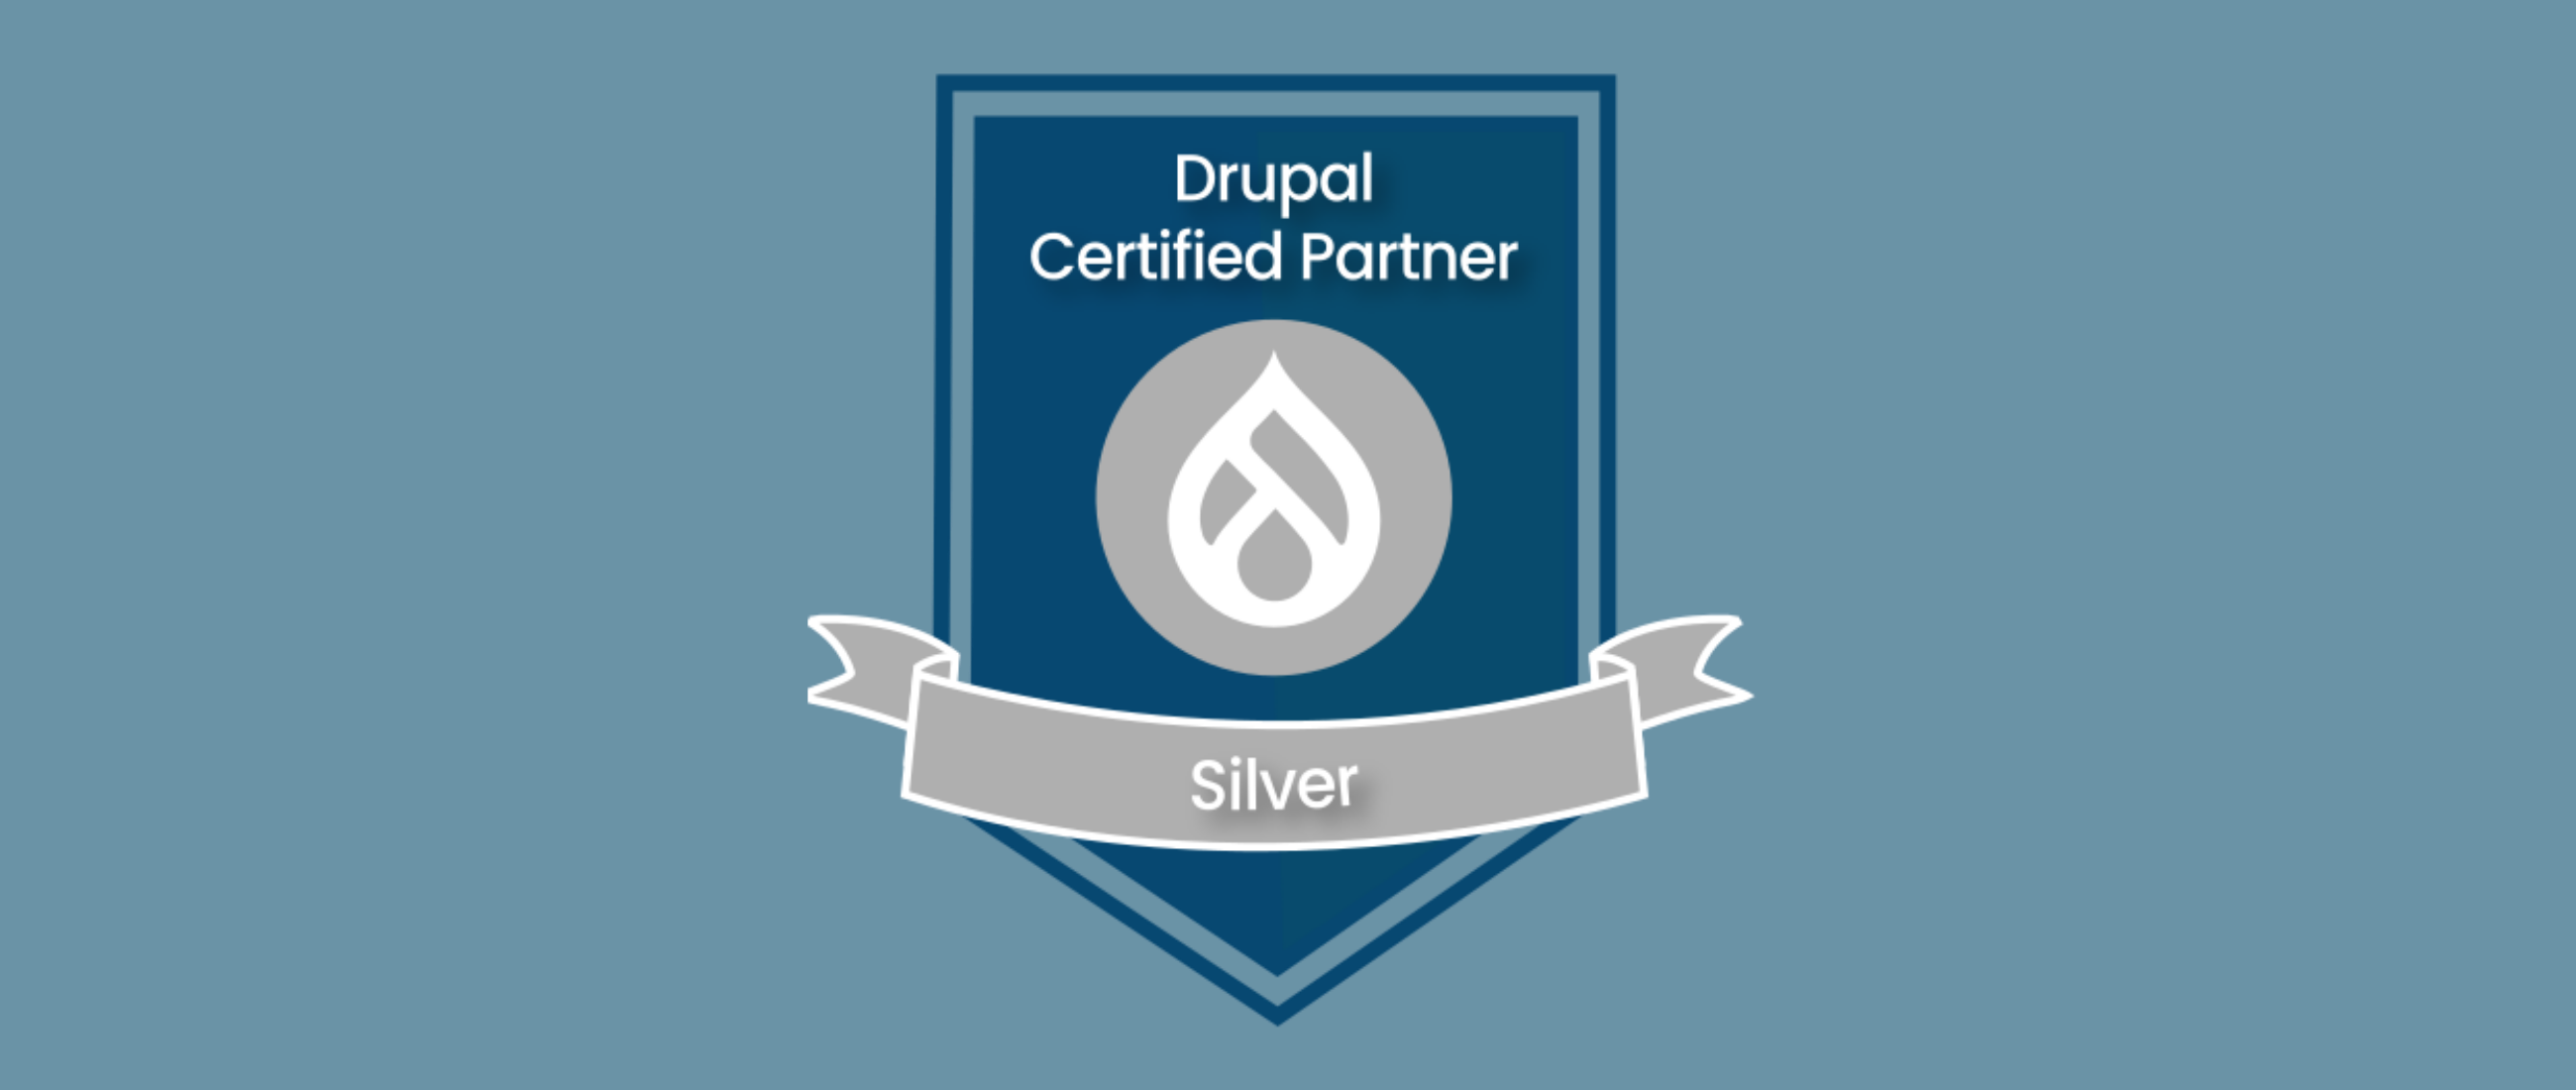 Drupal Certified Partner silver badge header